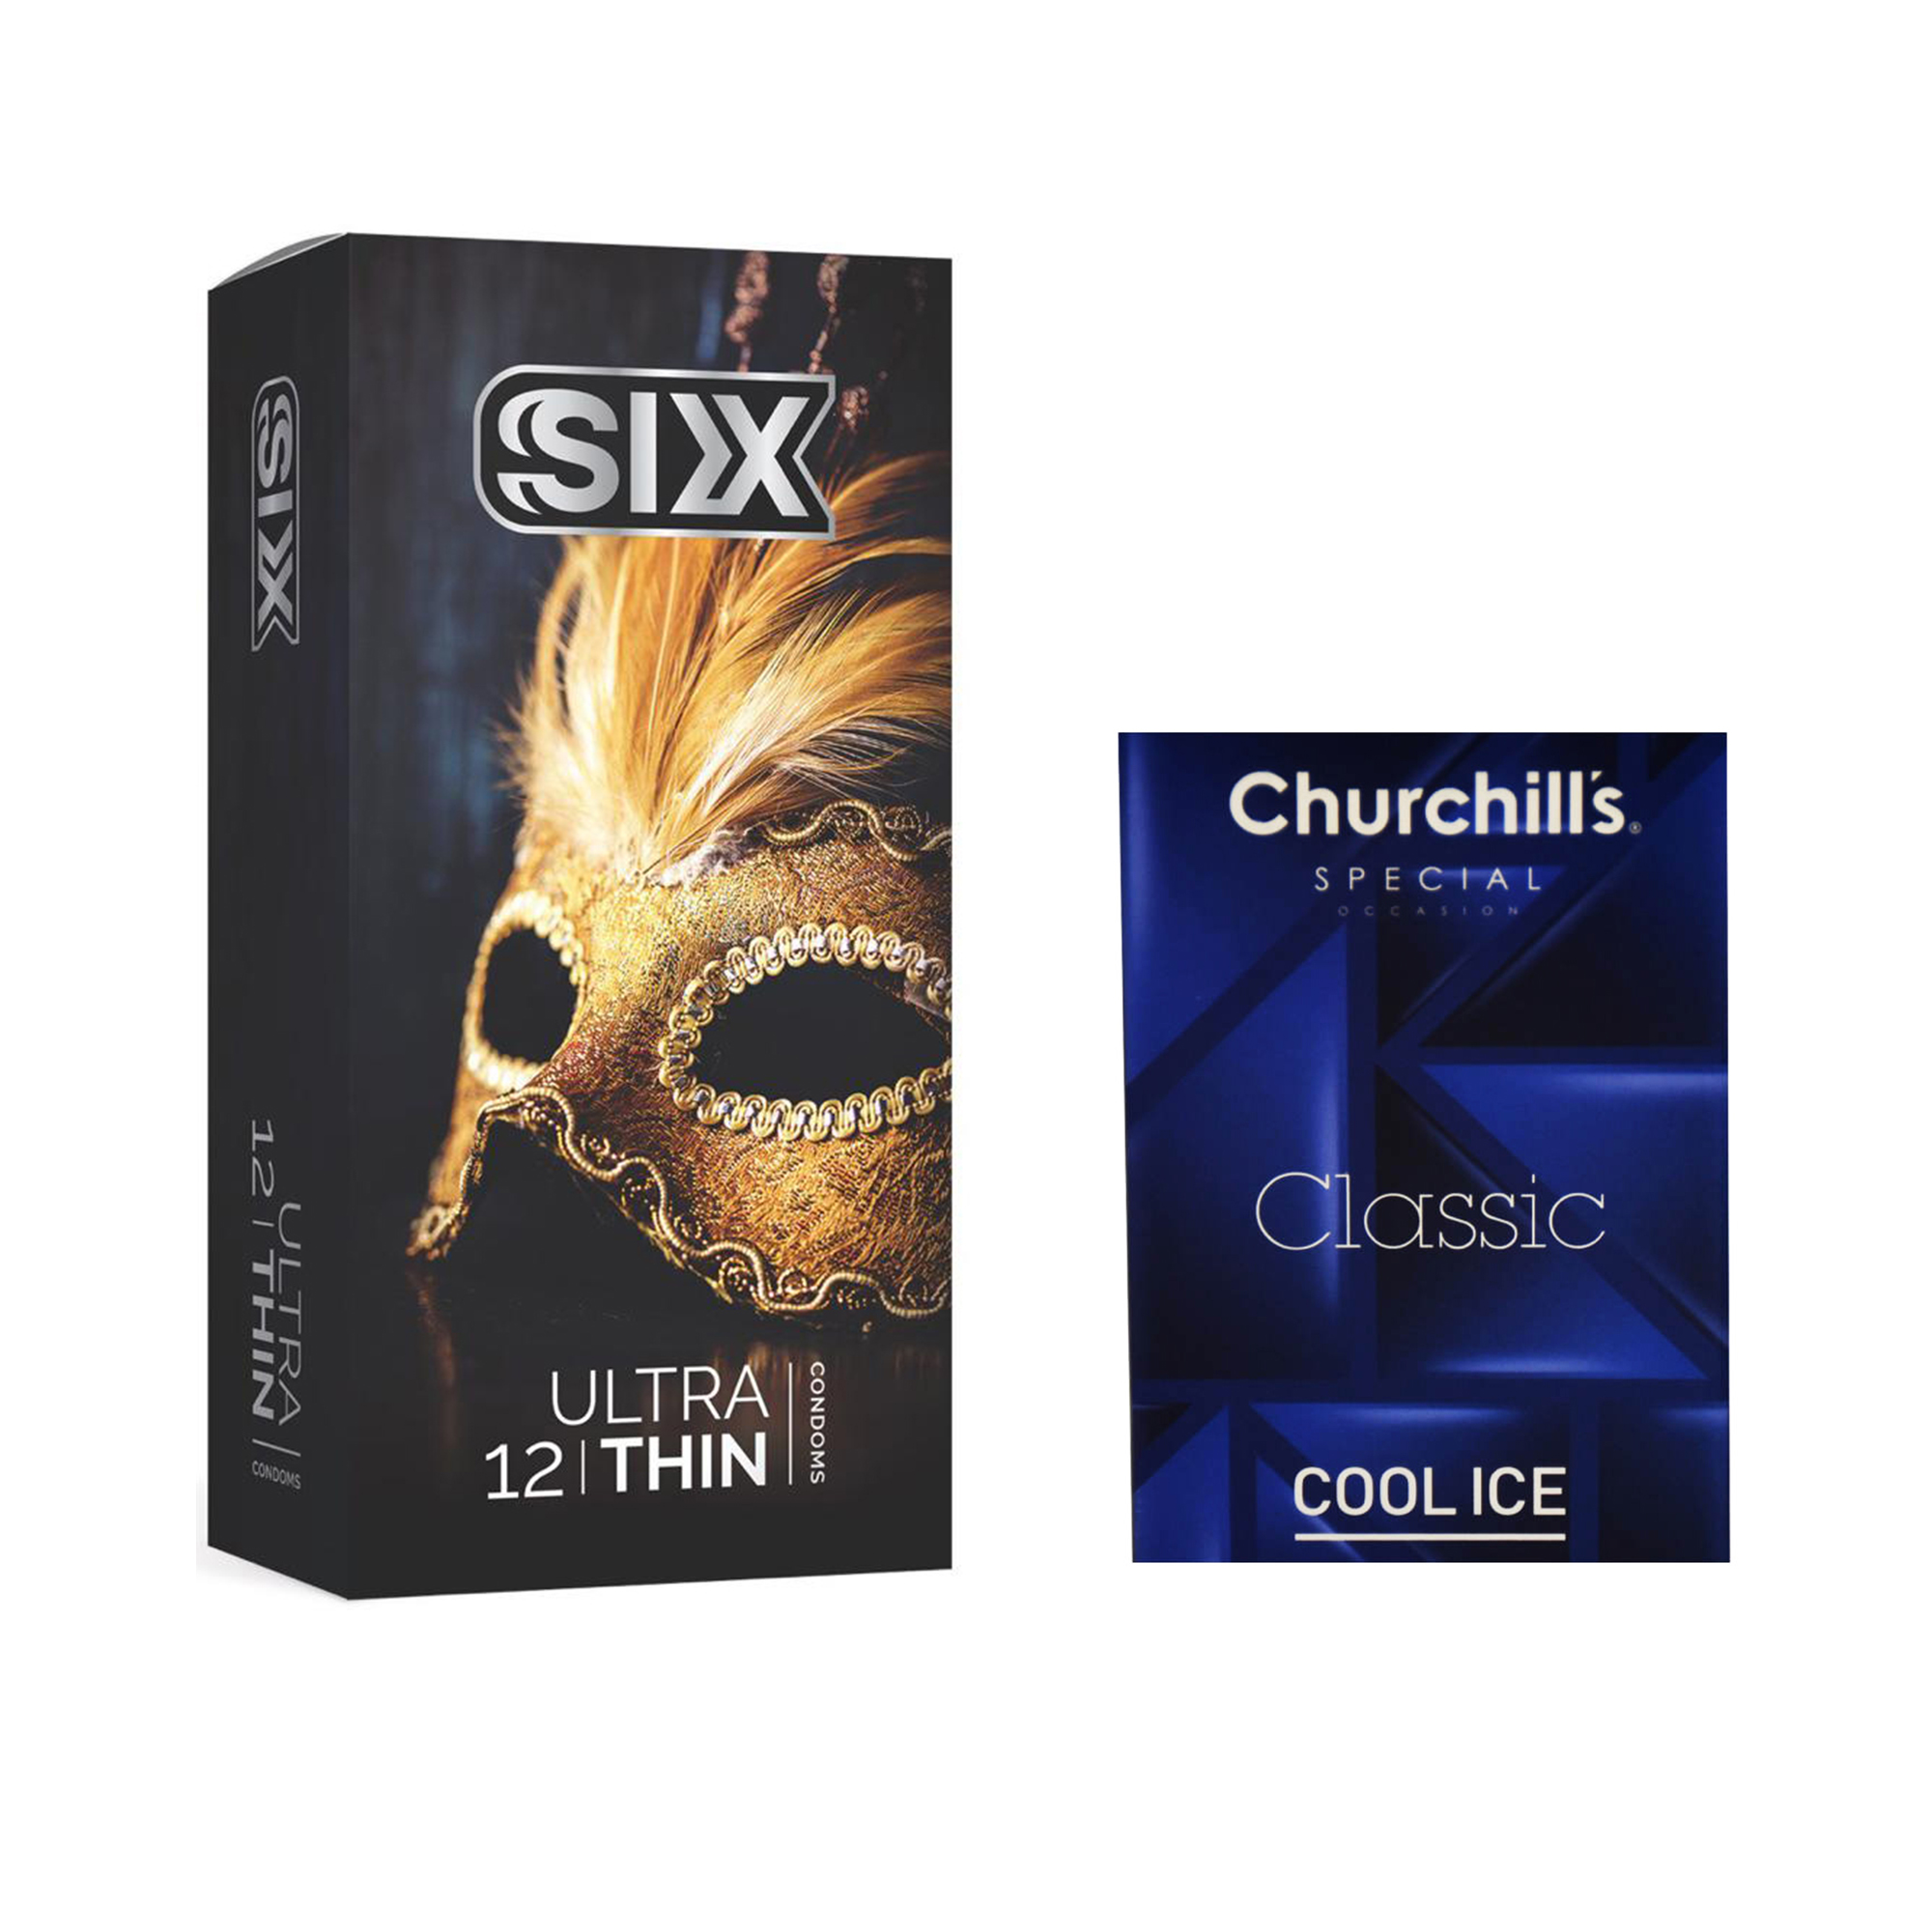 کاندوم سیکس مدل Ultra Thin بسته 12 عددی به همراه کاندوم چرچیلز مدل Cool Ice بسته 3 عددی